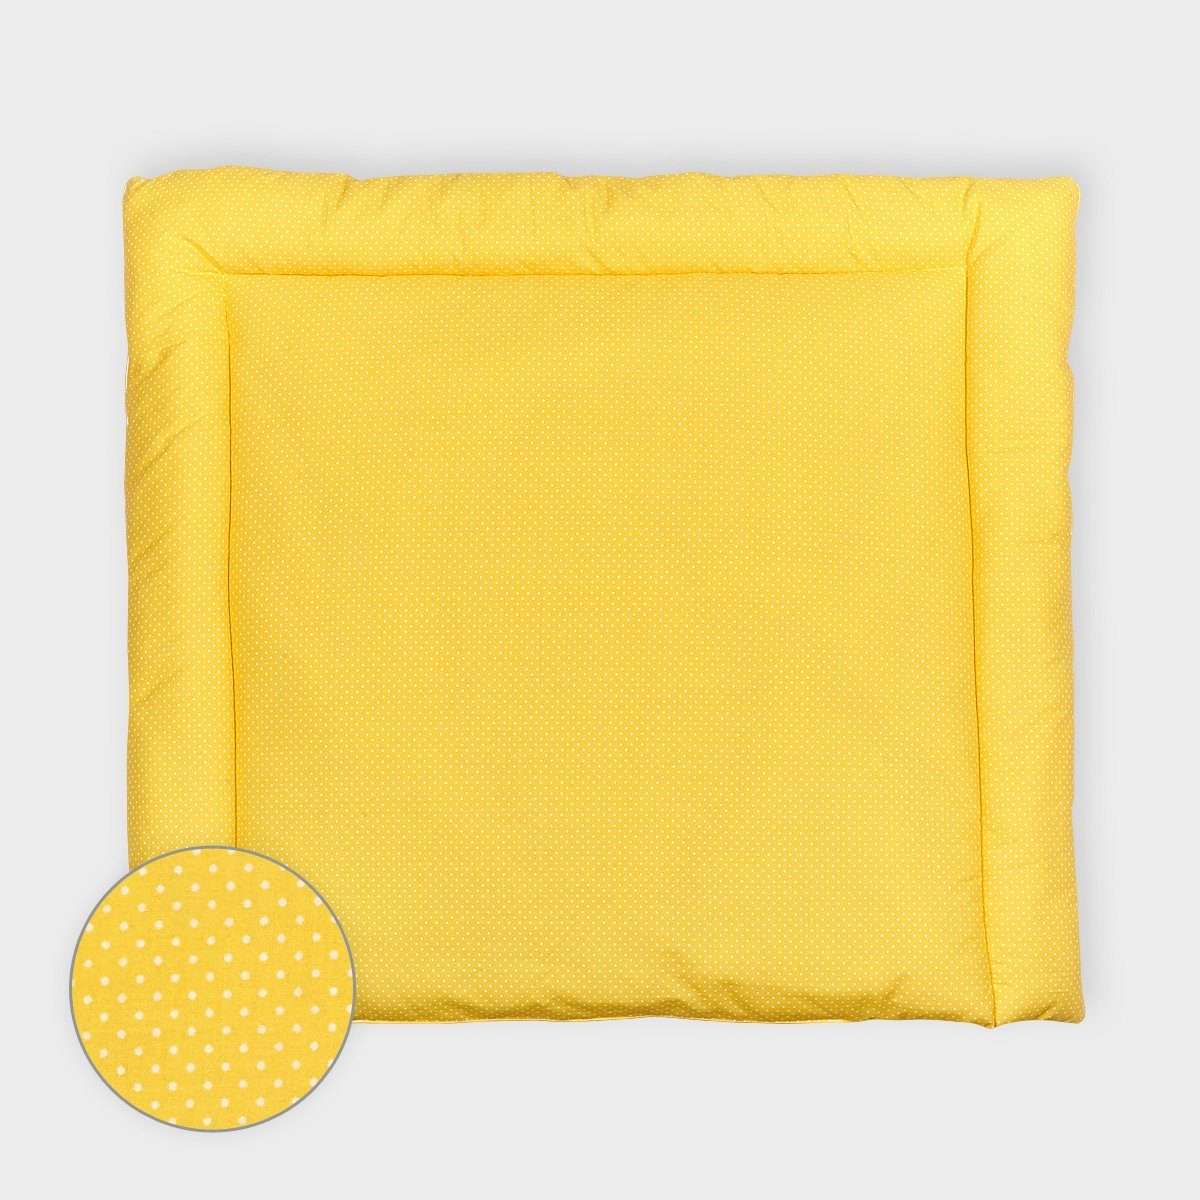 KraftKids Wickelauflage weiße Punkte auf Gelb, extra Weich (500 g/qm), mit antiallergenem Vlies gefüllt